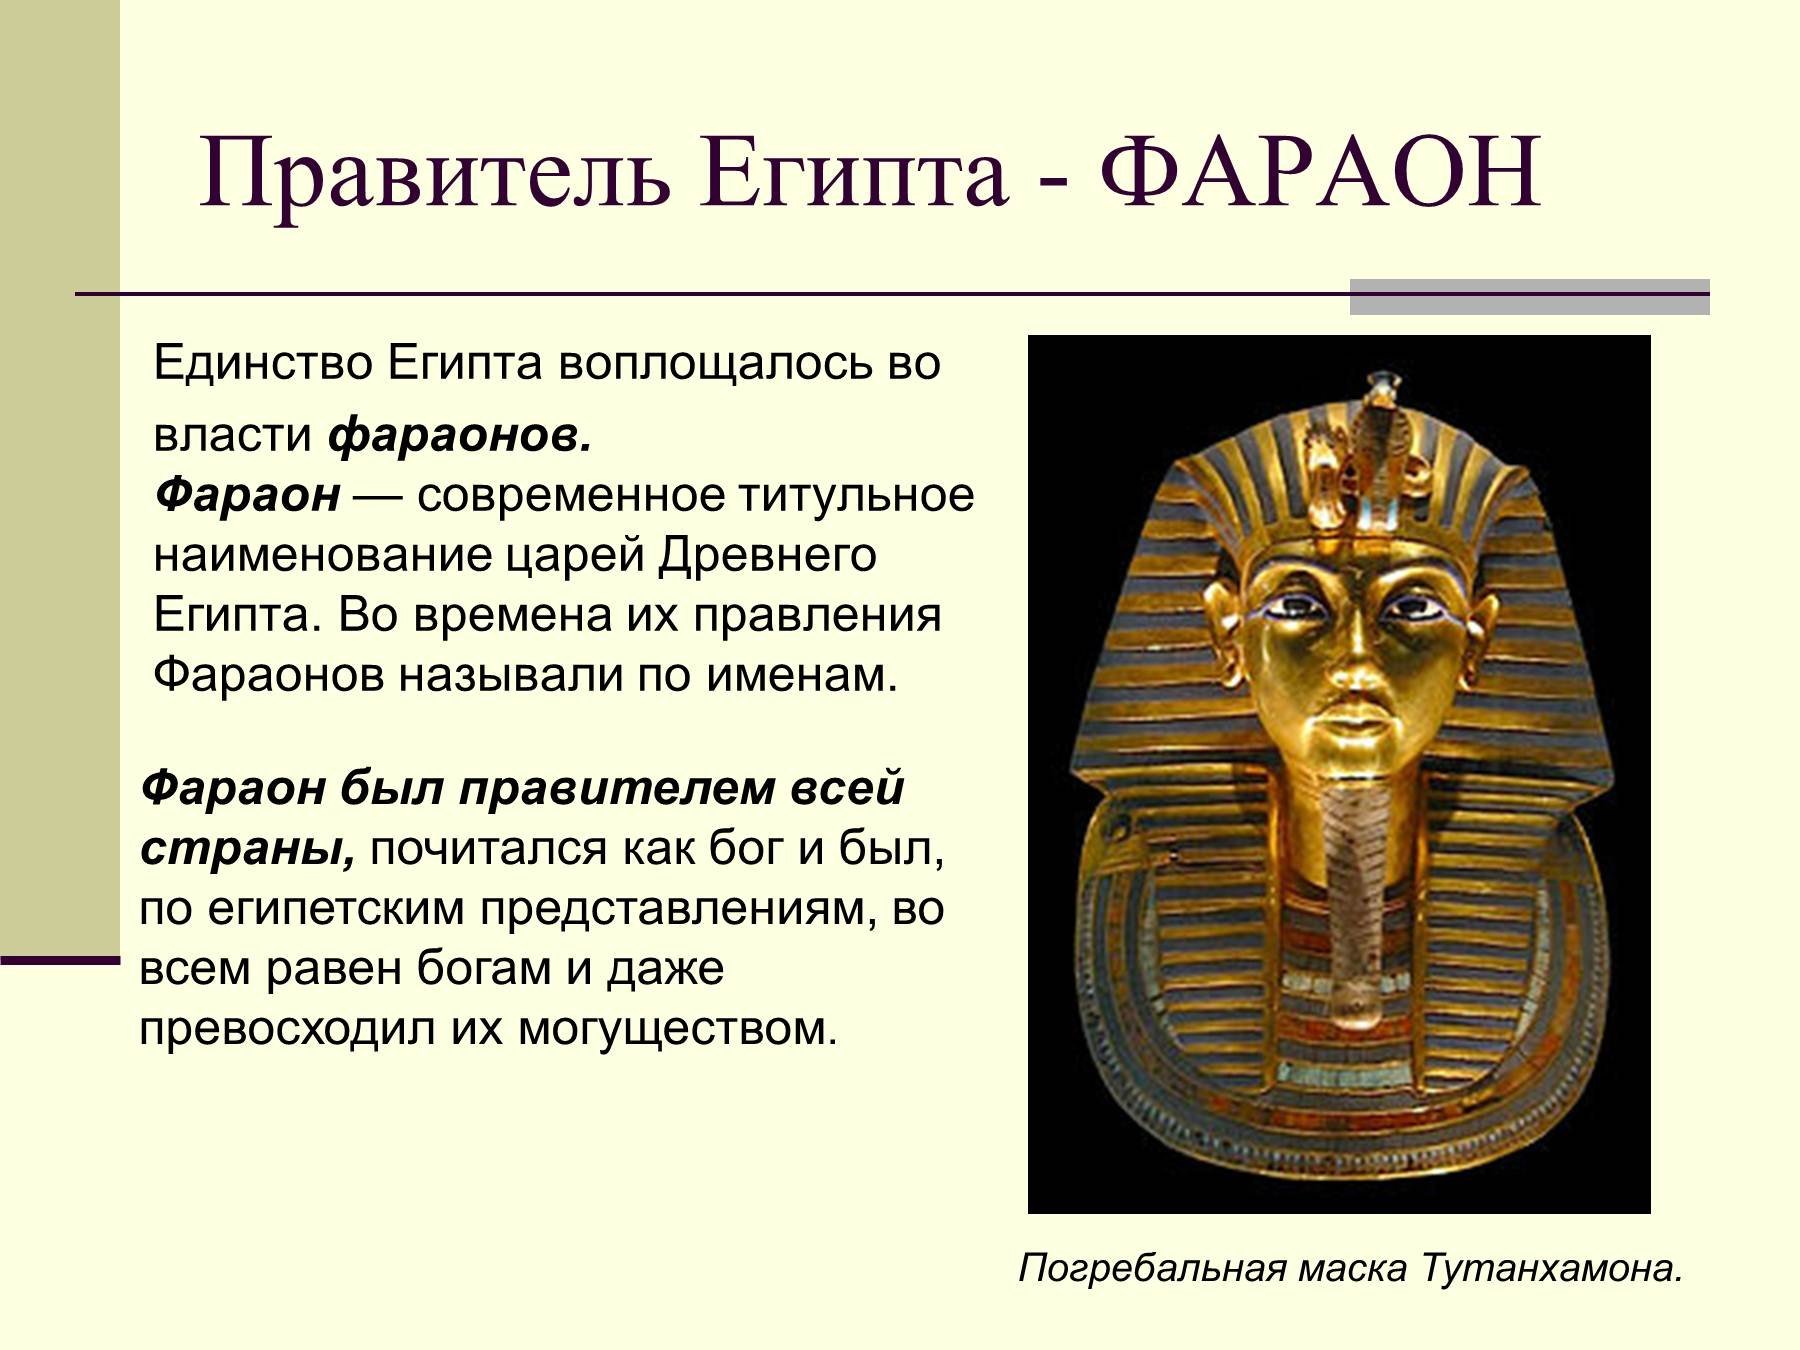 Включить фараона. Правление Тутанхамона в Египте история 5 класс. Фараон правитель древнего Египта. Правитель Египта фараон Тутанхамон 4 класс. Фараоны древнего Египта 5 класс доклад кратко.